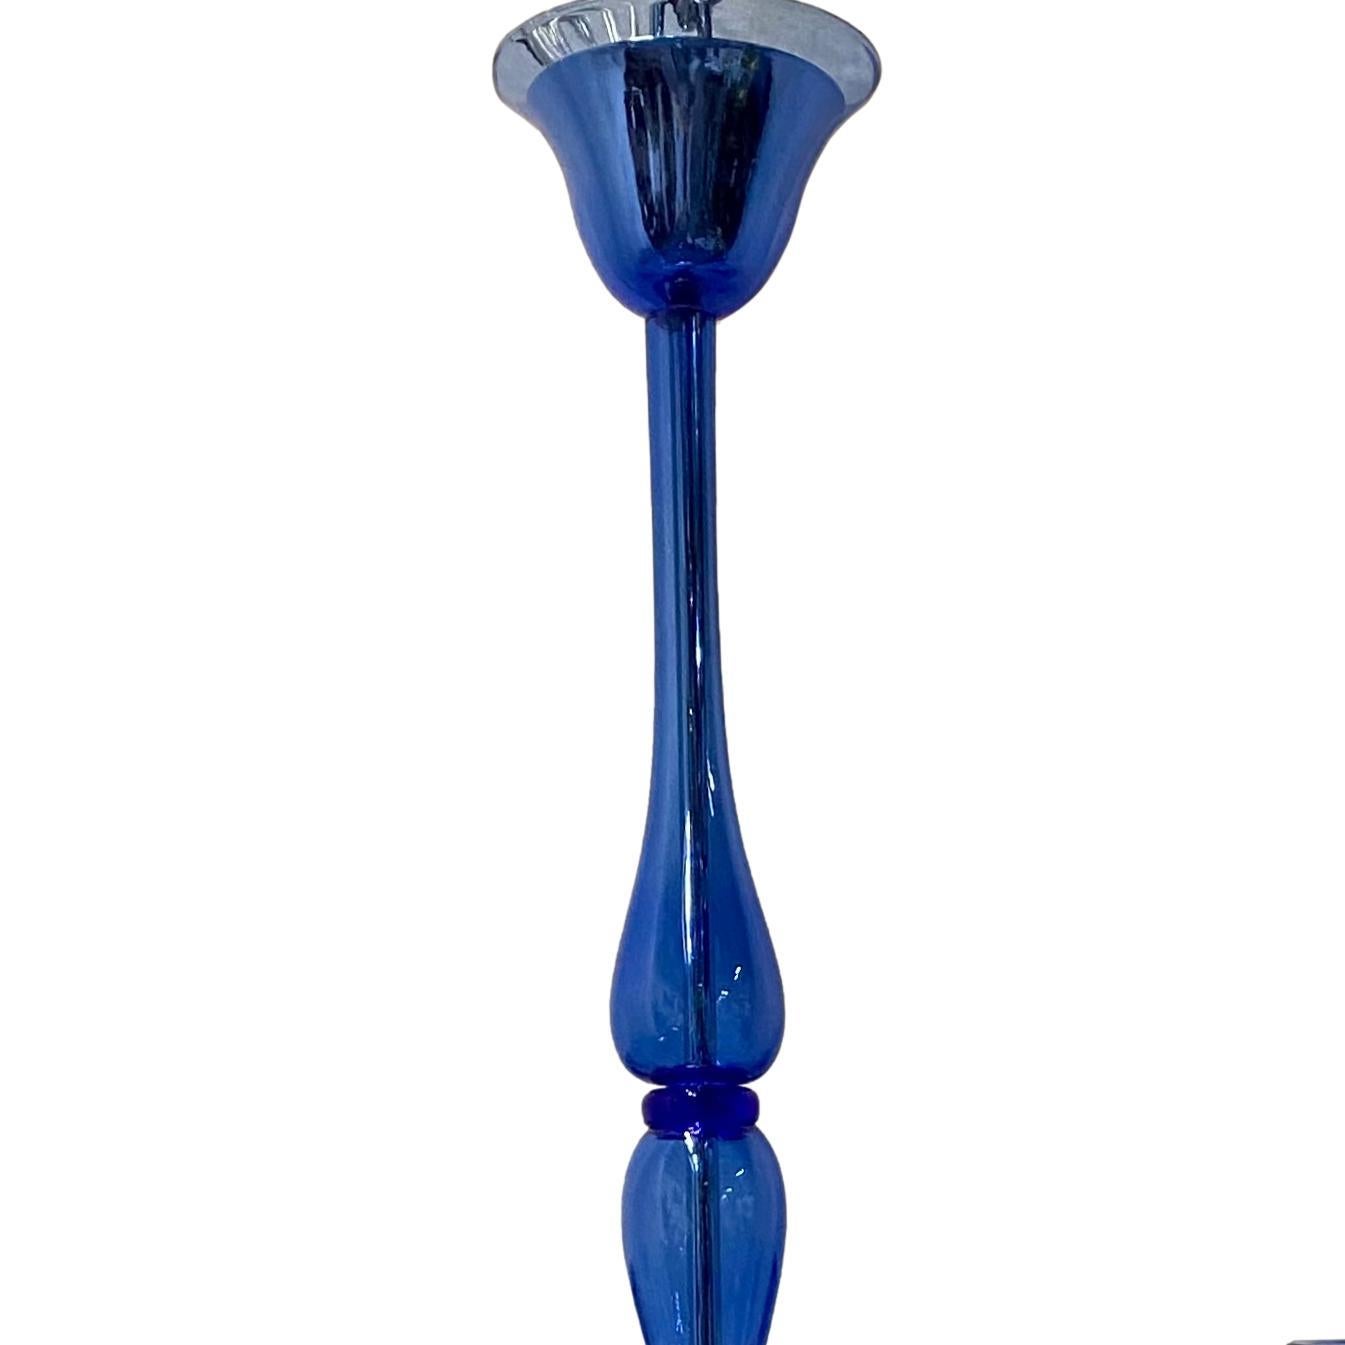 Paire de lustres italiens en verre bleu de Murano à huit bras de lumière, datant des années 1960. Vendu à l'unité.

Mesures :
Chute minimale : 40 ?
Diamètre : 36 ?